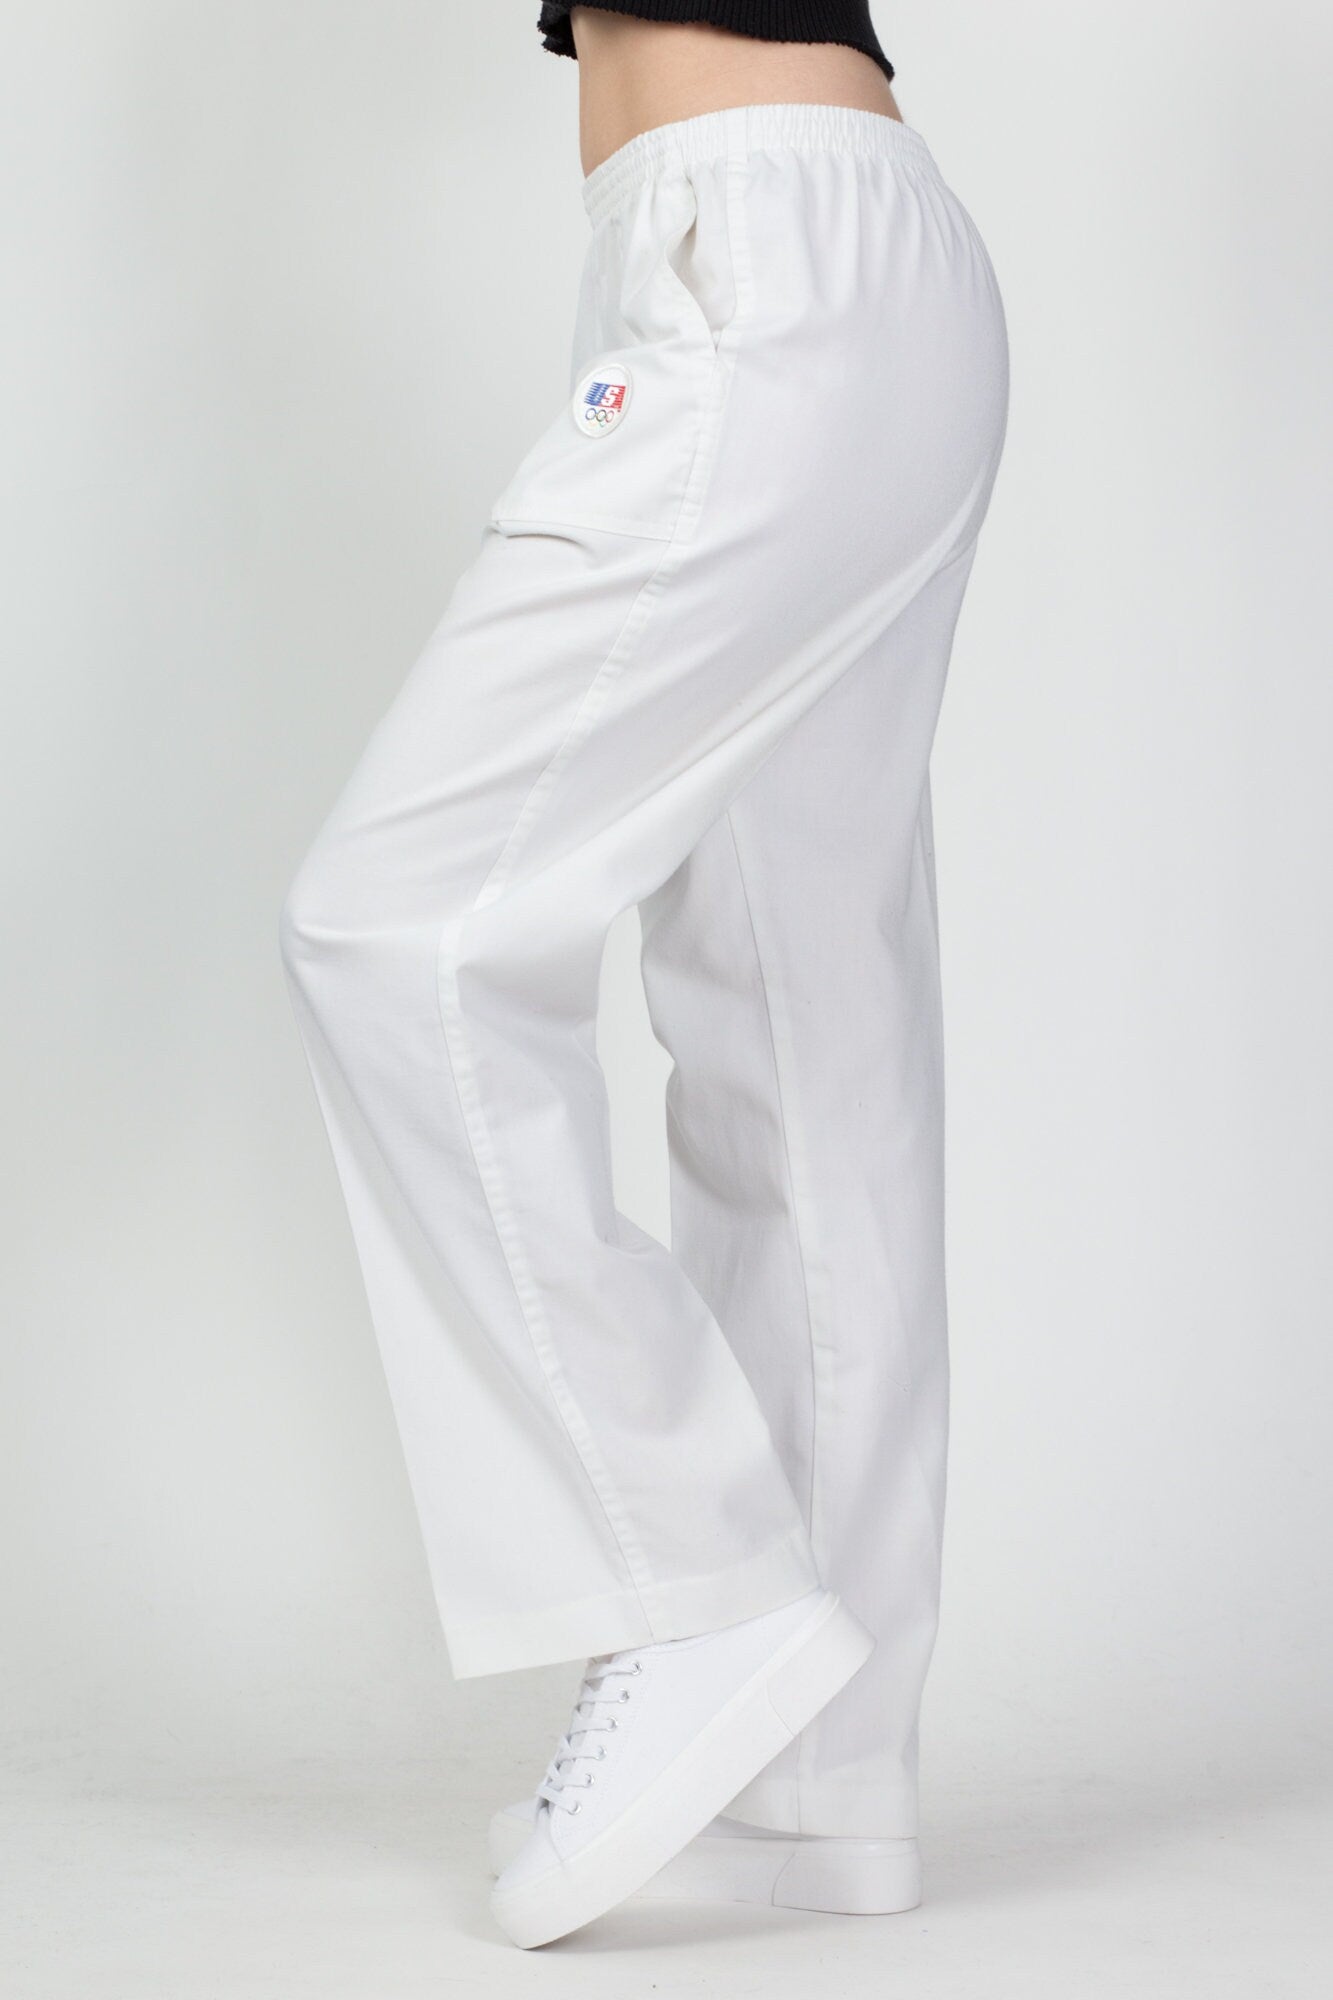 1984 Levi's LA Olympics Uniform Pants - Medium to Large – Flying Apple  Vintage